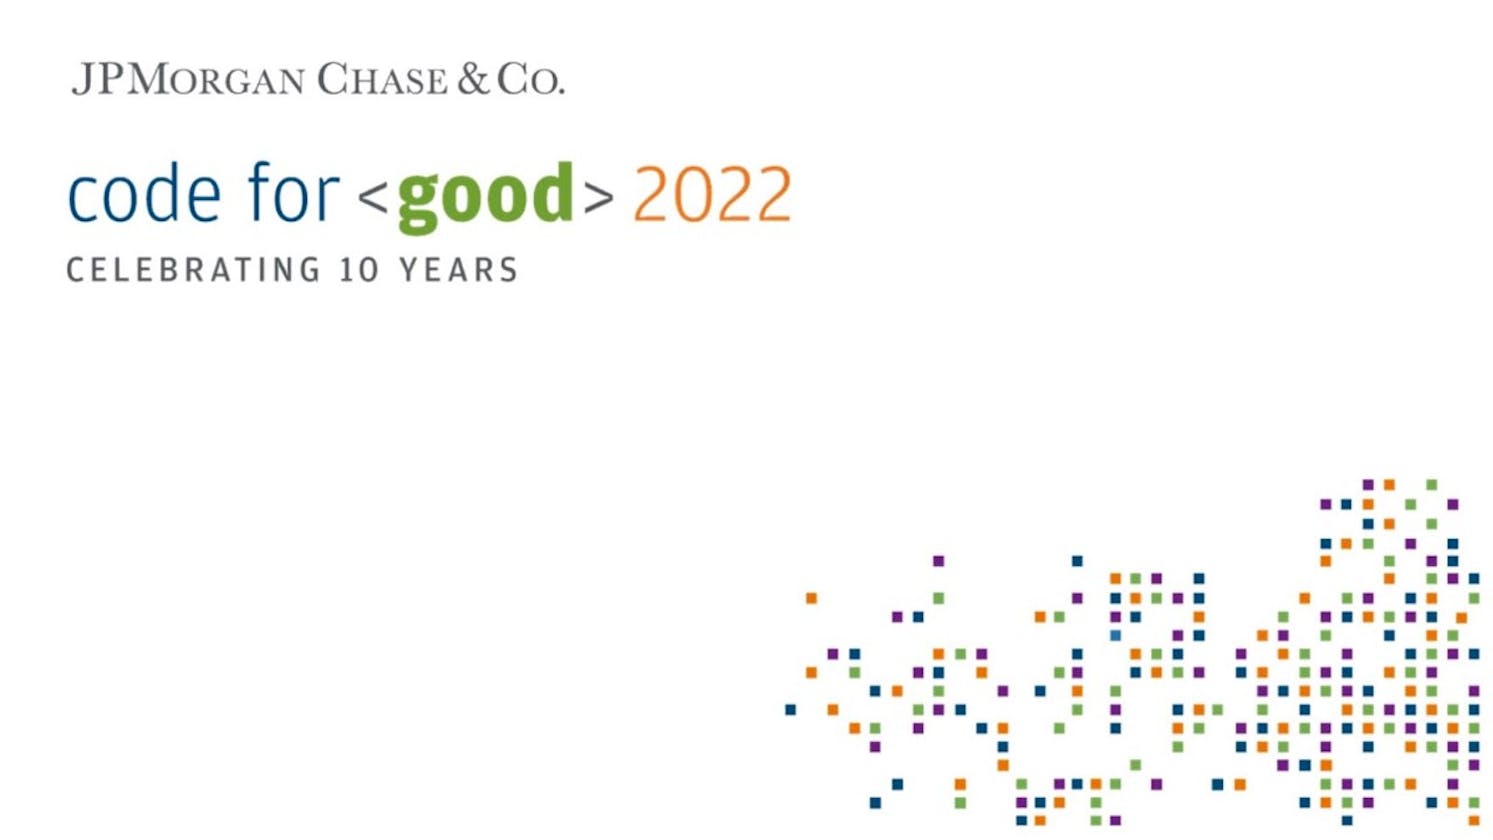 JP Morgan's Code for Good 2022